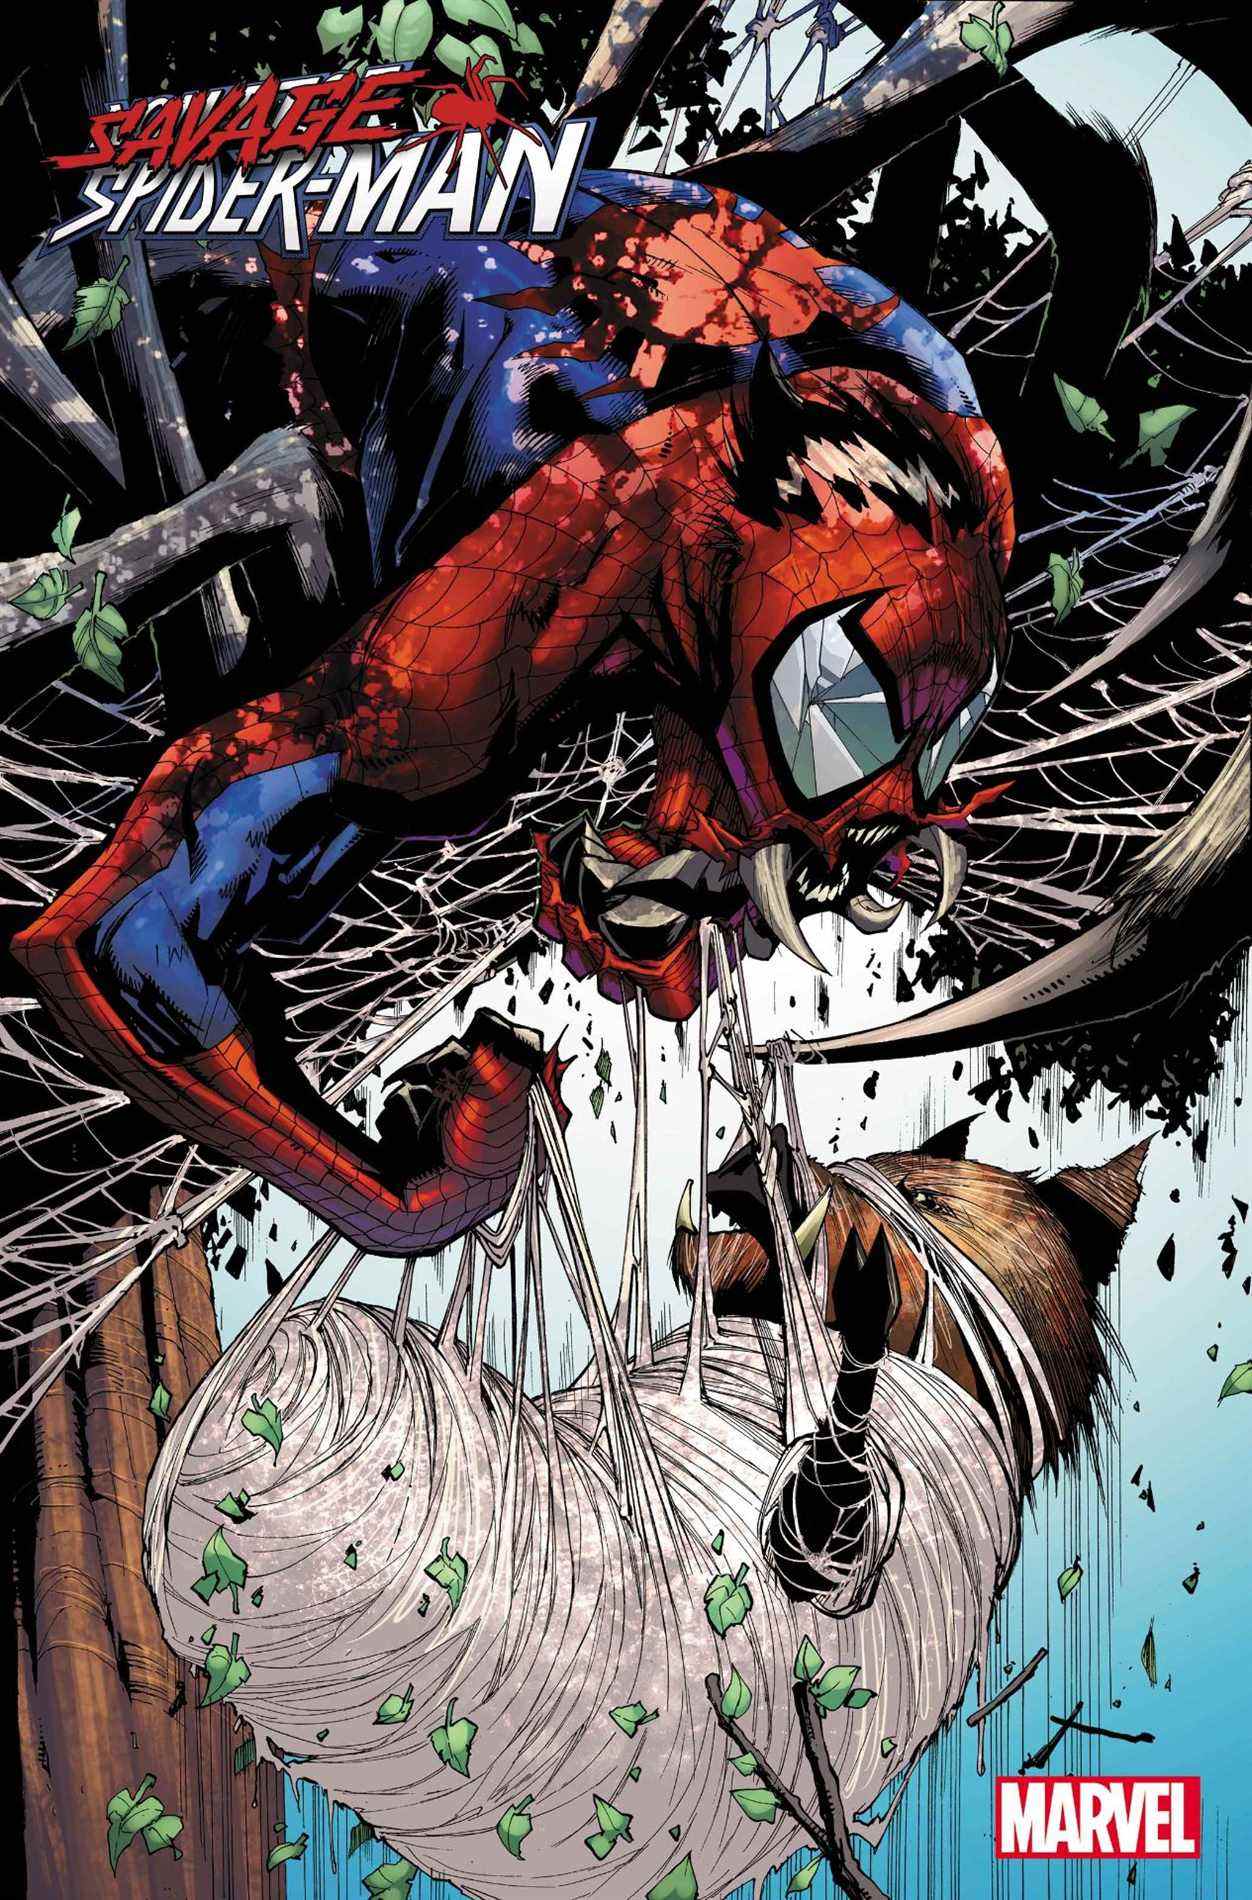 Spider-Man sauvage #1